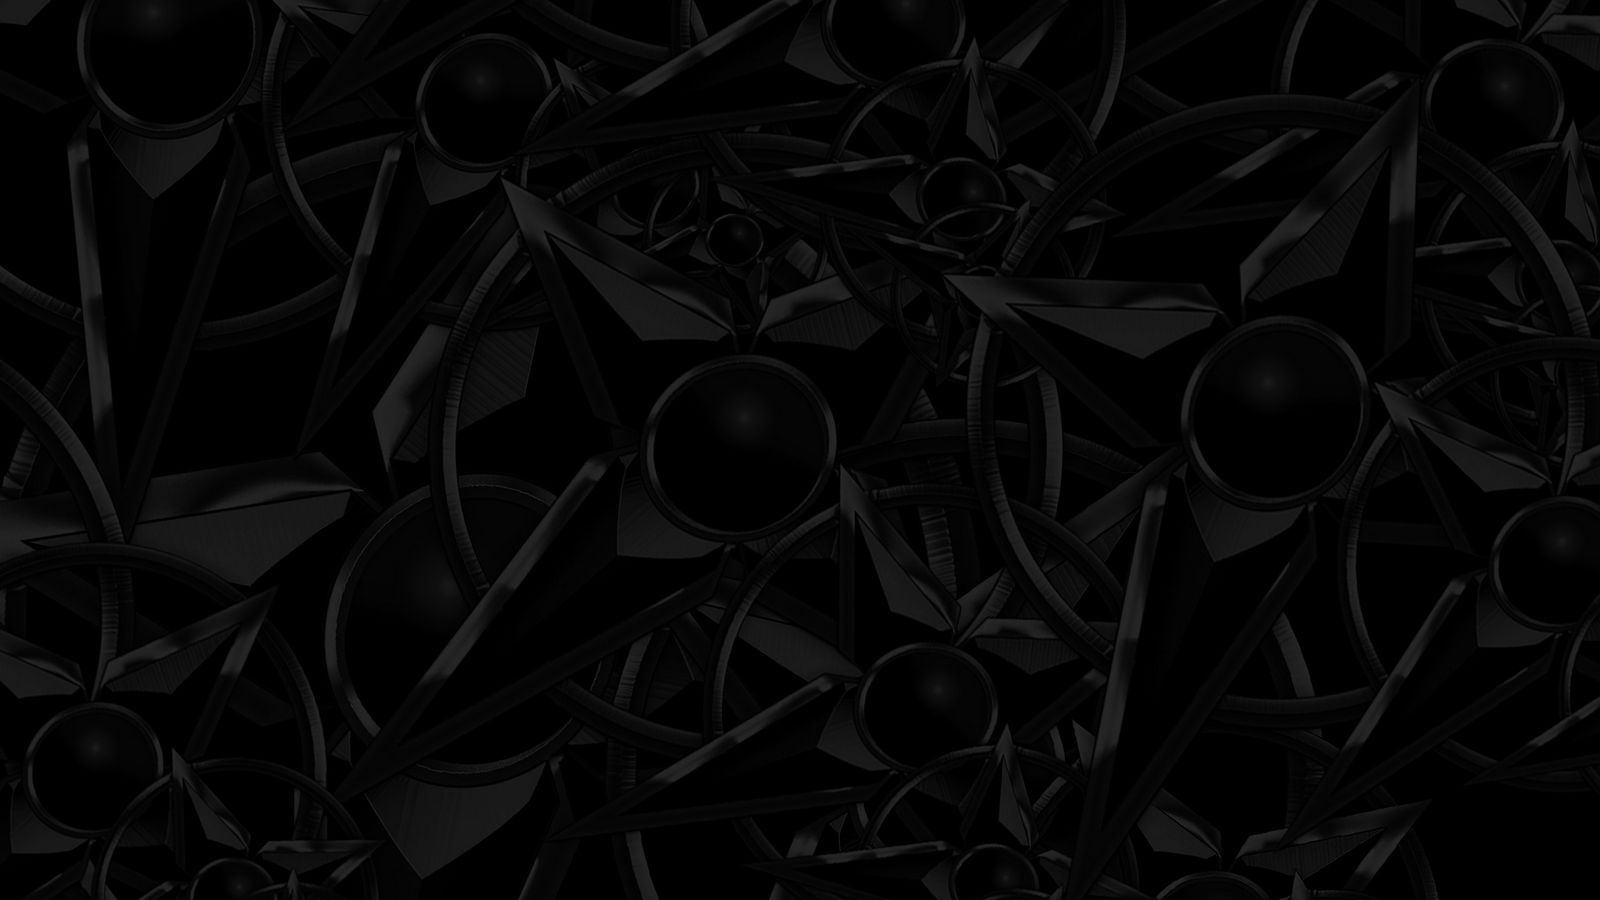 Hình nền cấu trúc đen - Những hình nền cấu trúc đen sẽ mang đến sự độc đáo và nổi bật cho chiếc điện thoại của bạn. Với những hình ảnh tinh tế trên nền đen sẽ giúp bạn tạo nên một phong cách đầy chất riêng biệt.